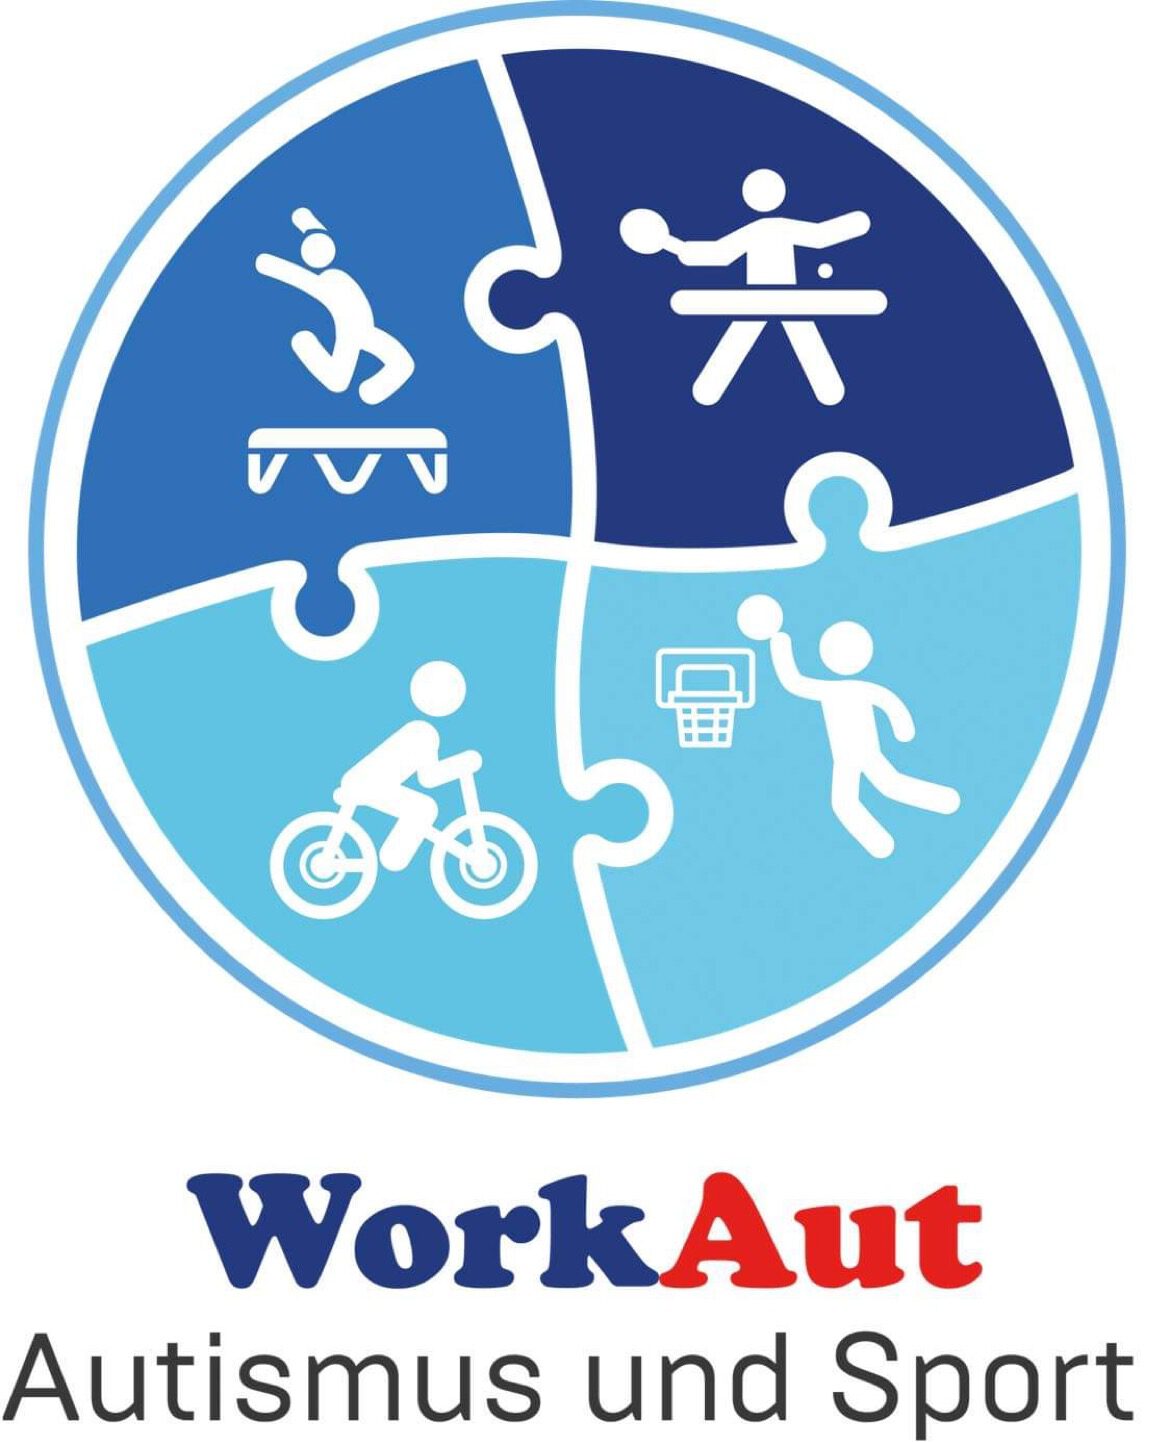 Autismus und Sport WorkAut